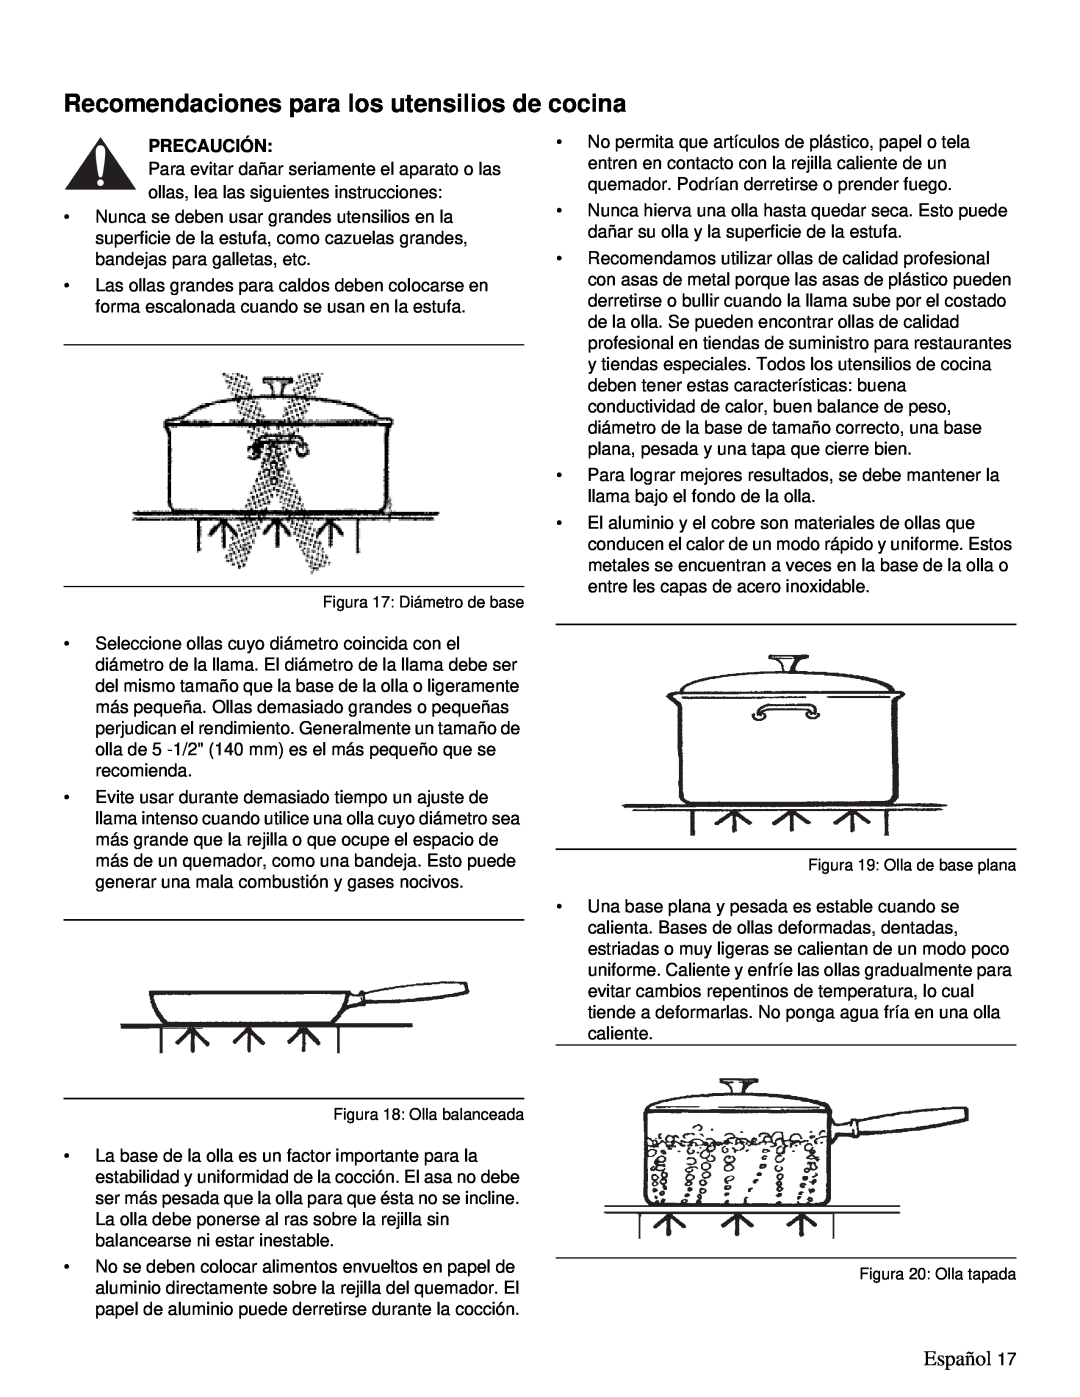 Thermador PRD36, PRD48 Recomendaciones para los utensilios de cocina, Español, Precaución, Figura 17: Diámetro de base 